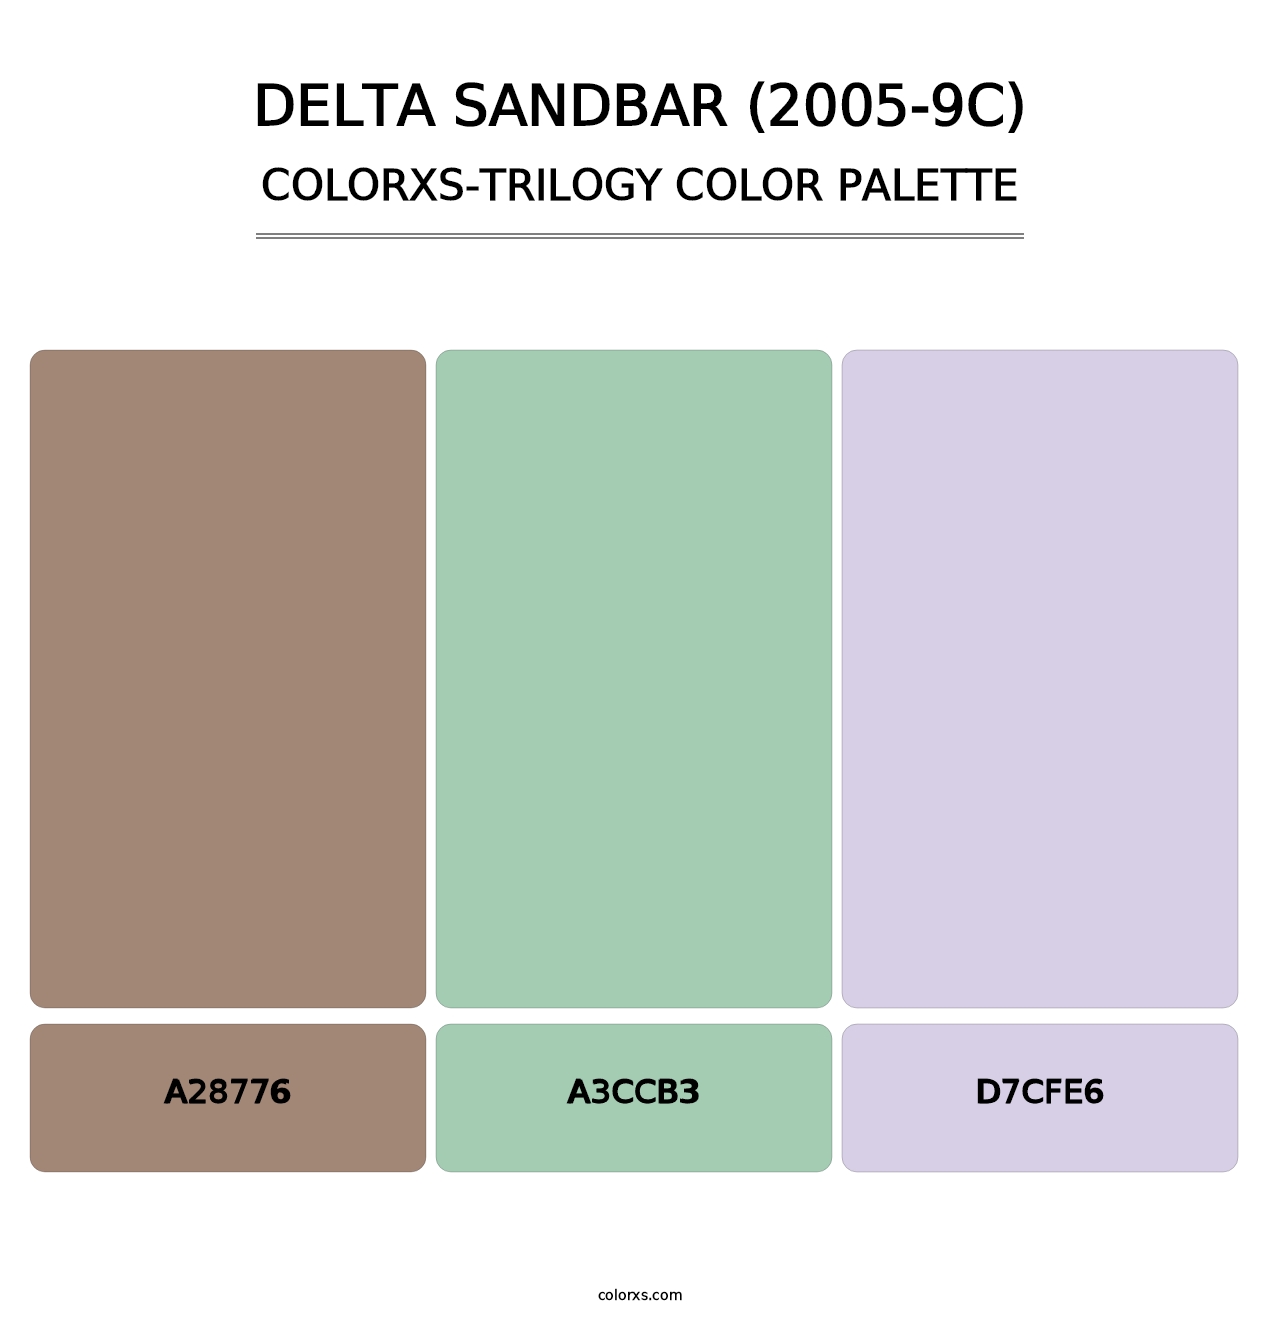 Delta Sandbar (2005-9C) - Colorxs Trilogy Palette